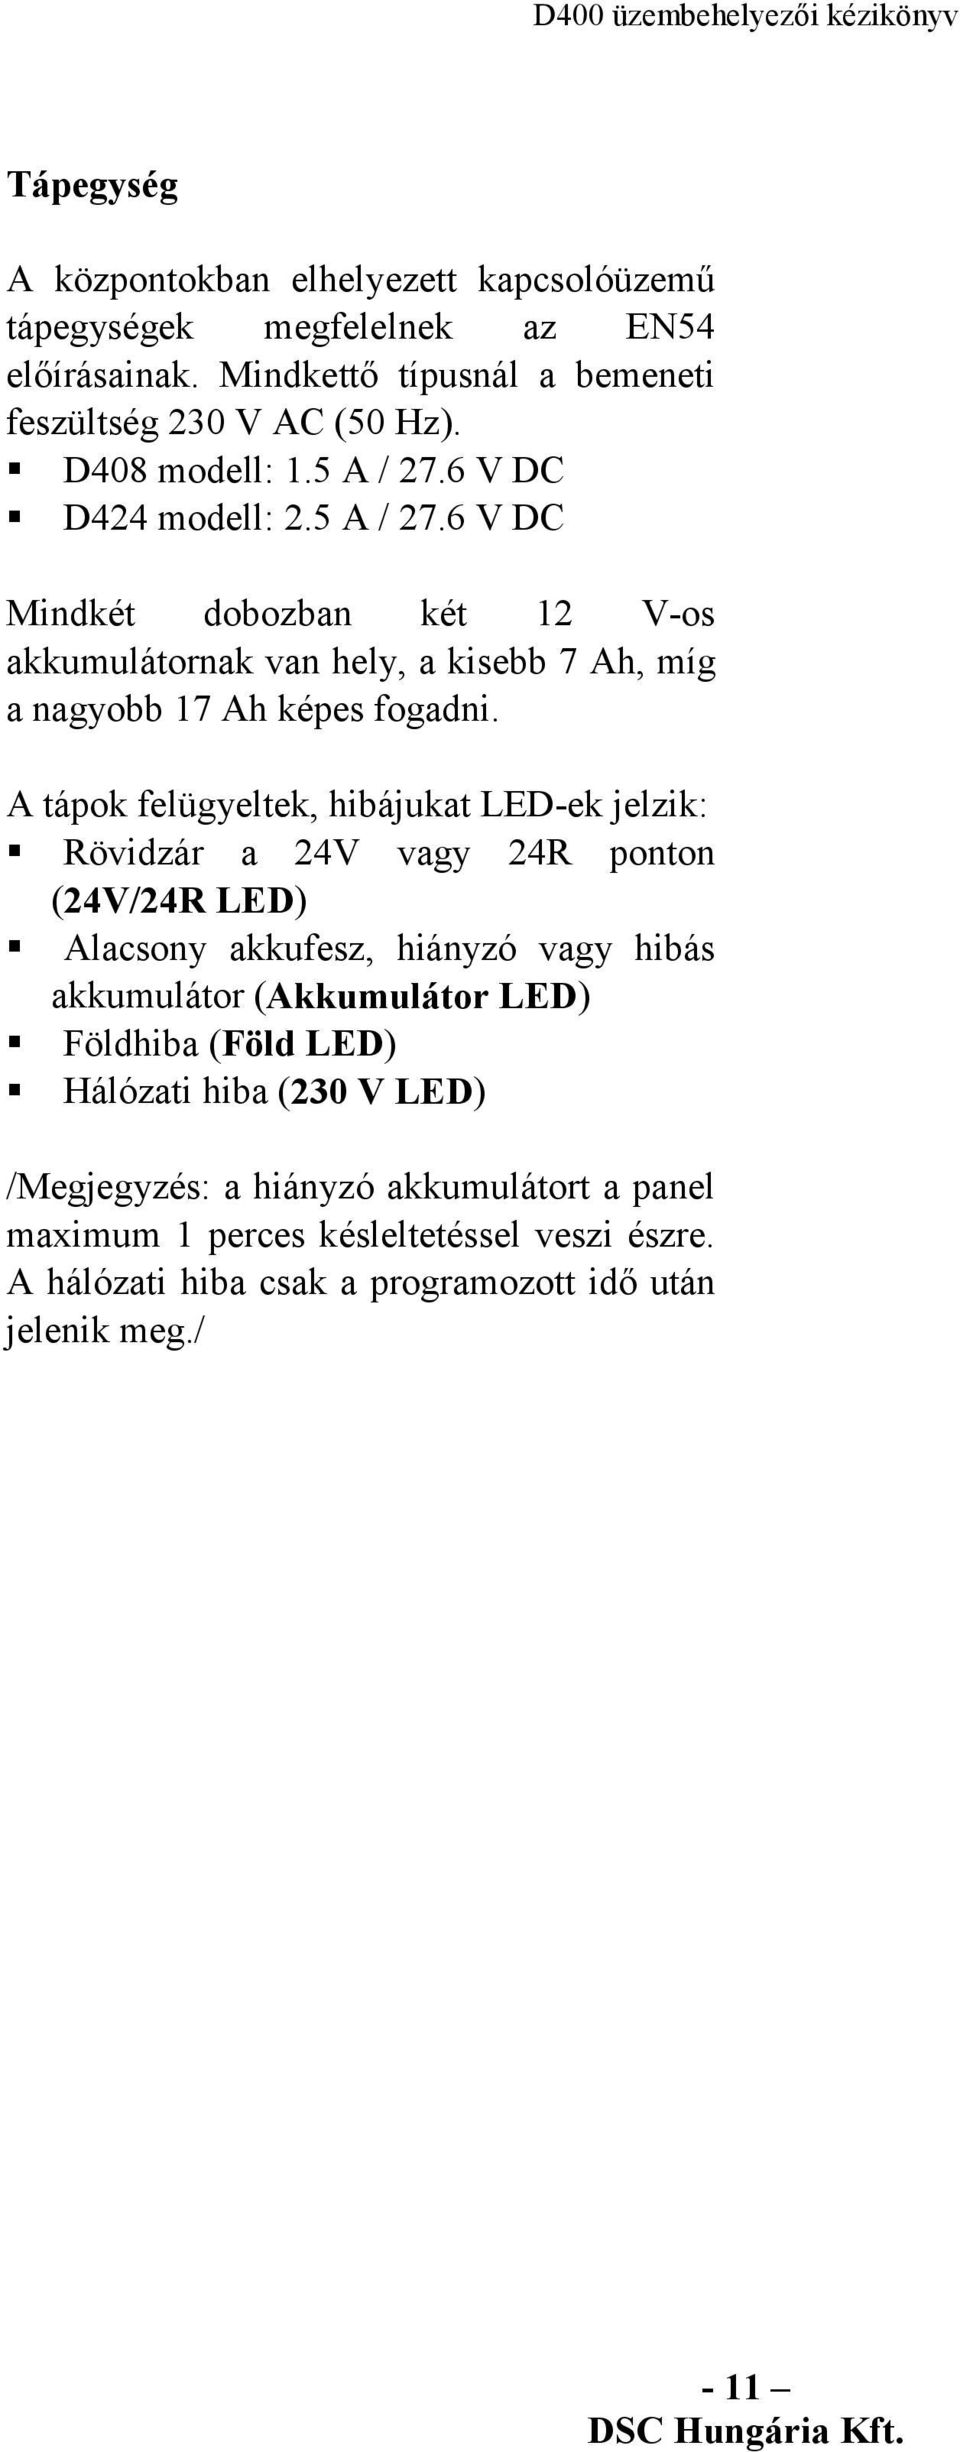 A tápok felügyeltek, hibájukat LED-ek jelzik: Rövidzár a 24V vagy 24R ponton (24V/24R LED) Alacsony akkufesz, hiányzó vagy hibás akkumulátor (Akkumulátor LED) Földhiba